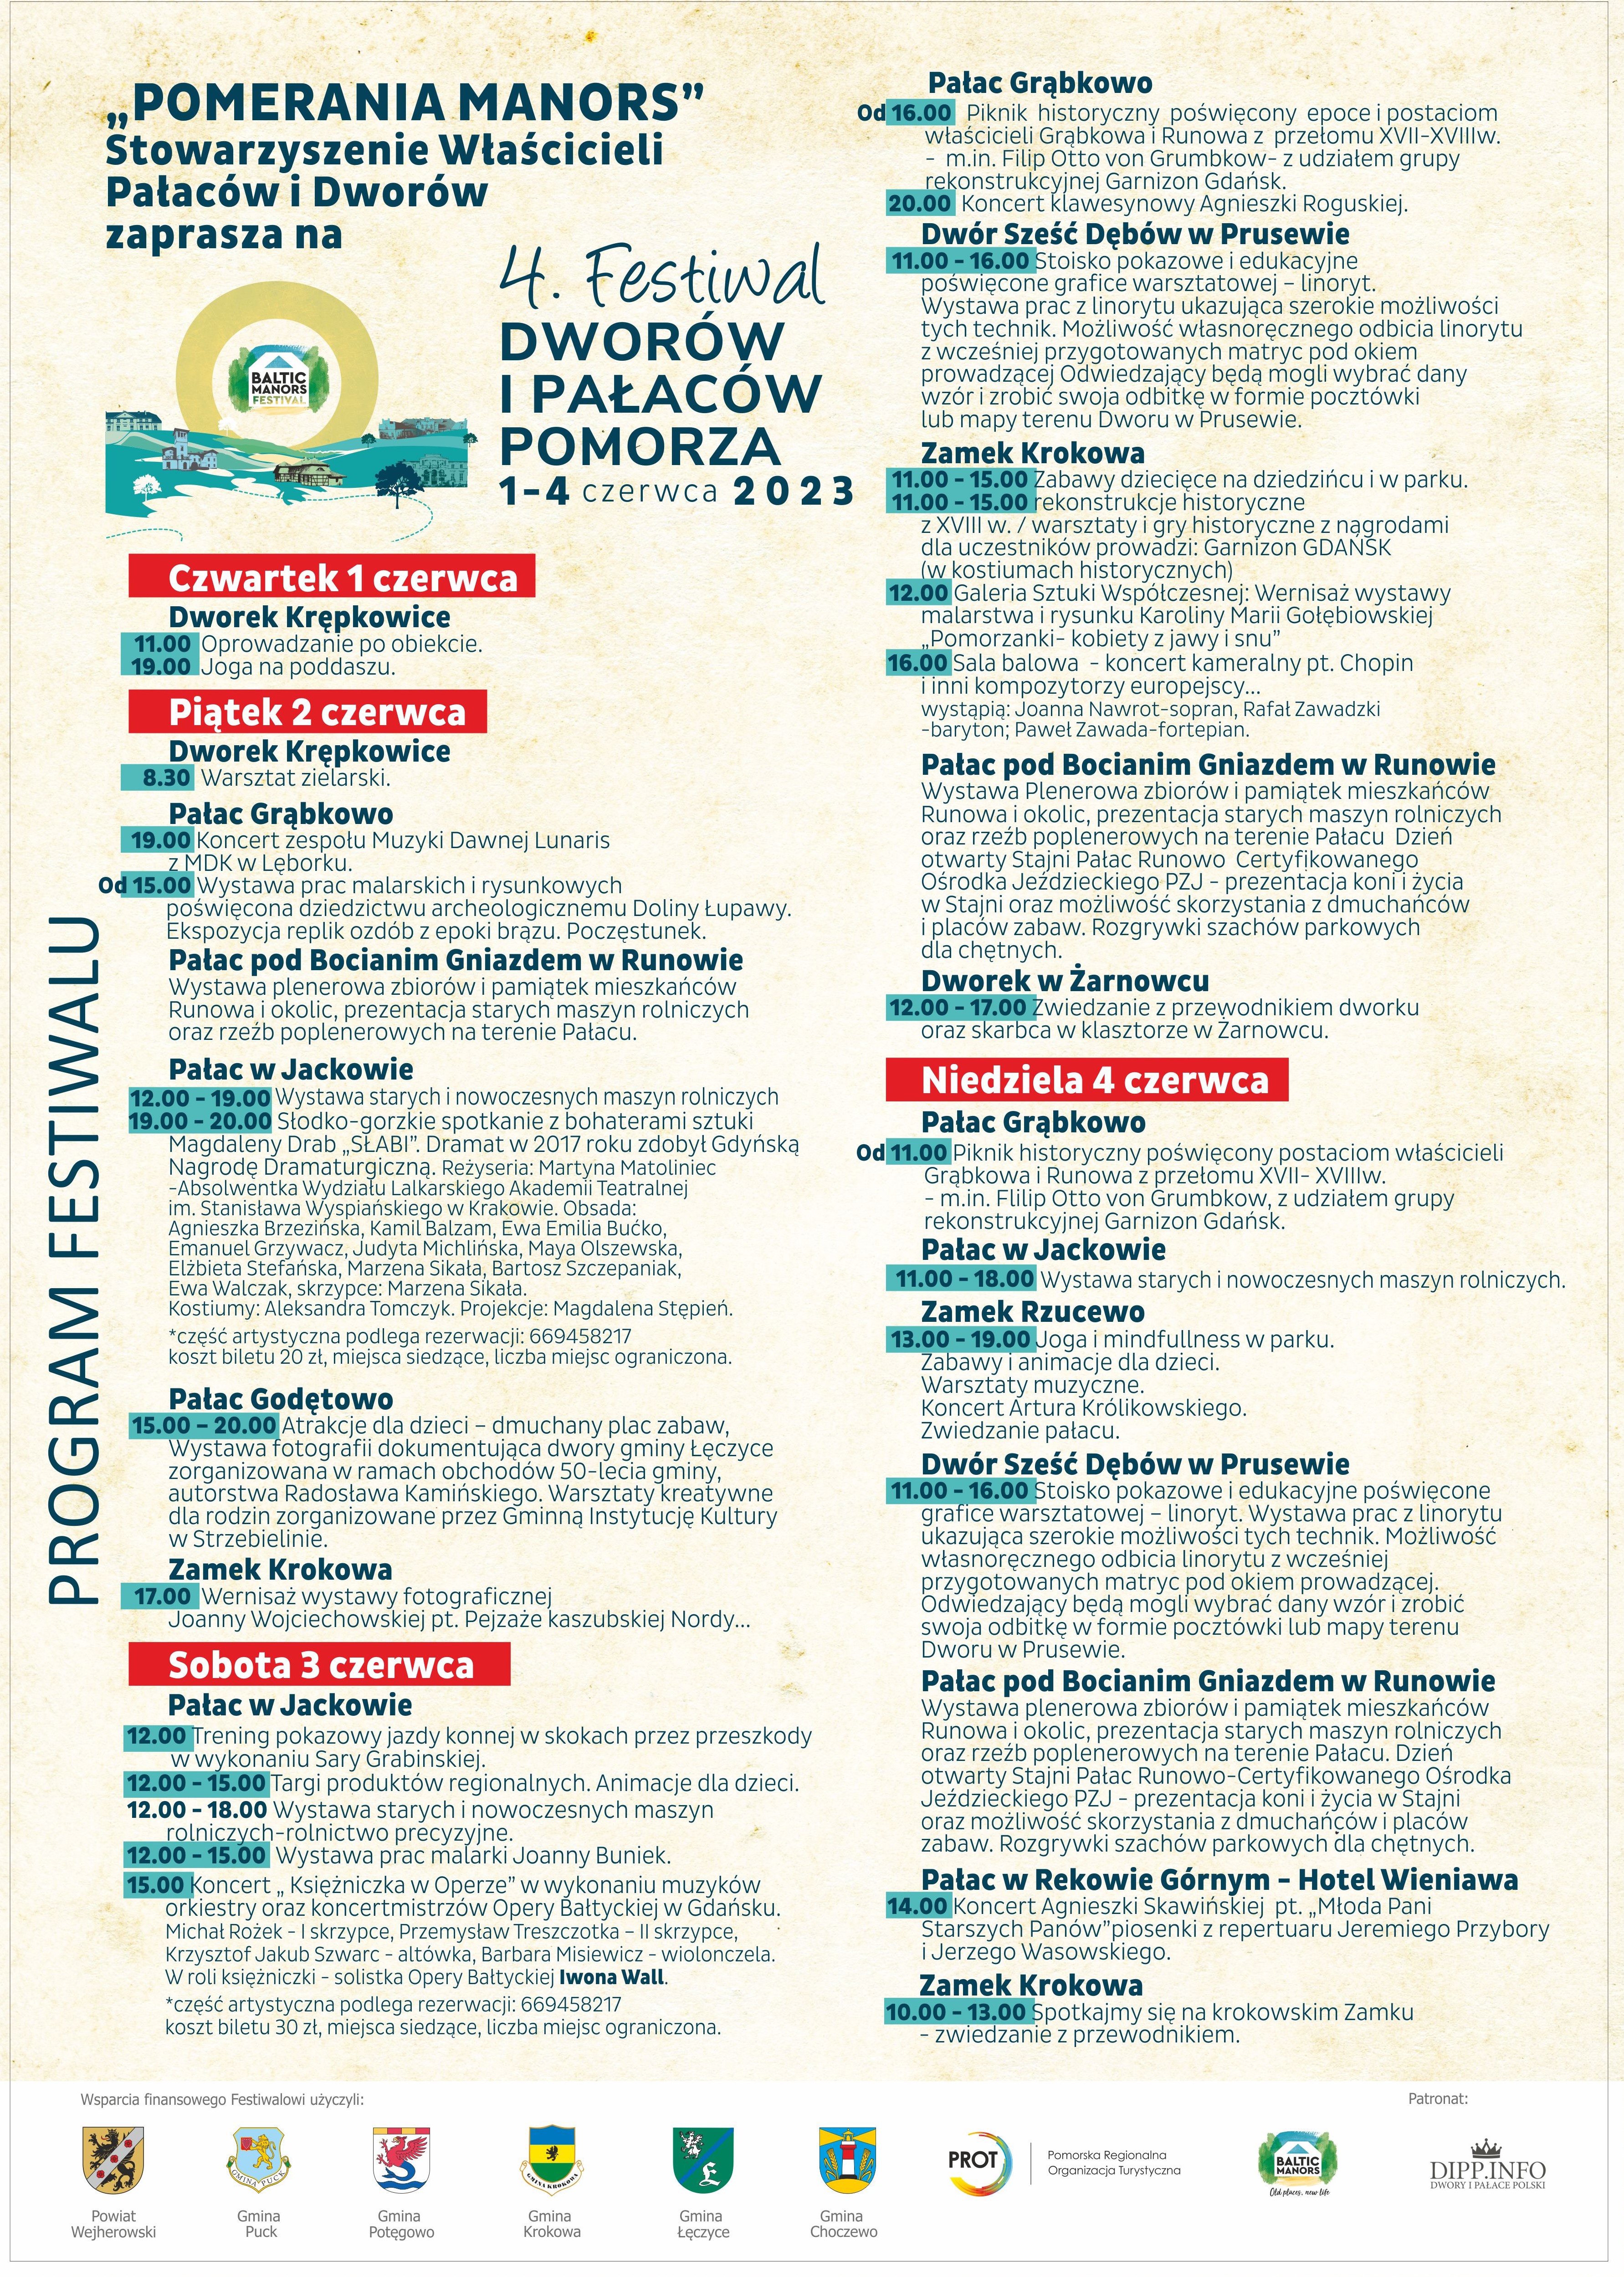 Plakat przedstawiający program festiwalu Dworów i Pałaców Pomorza 2023 r